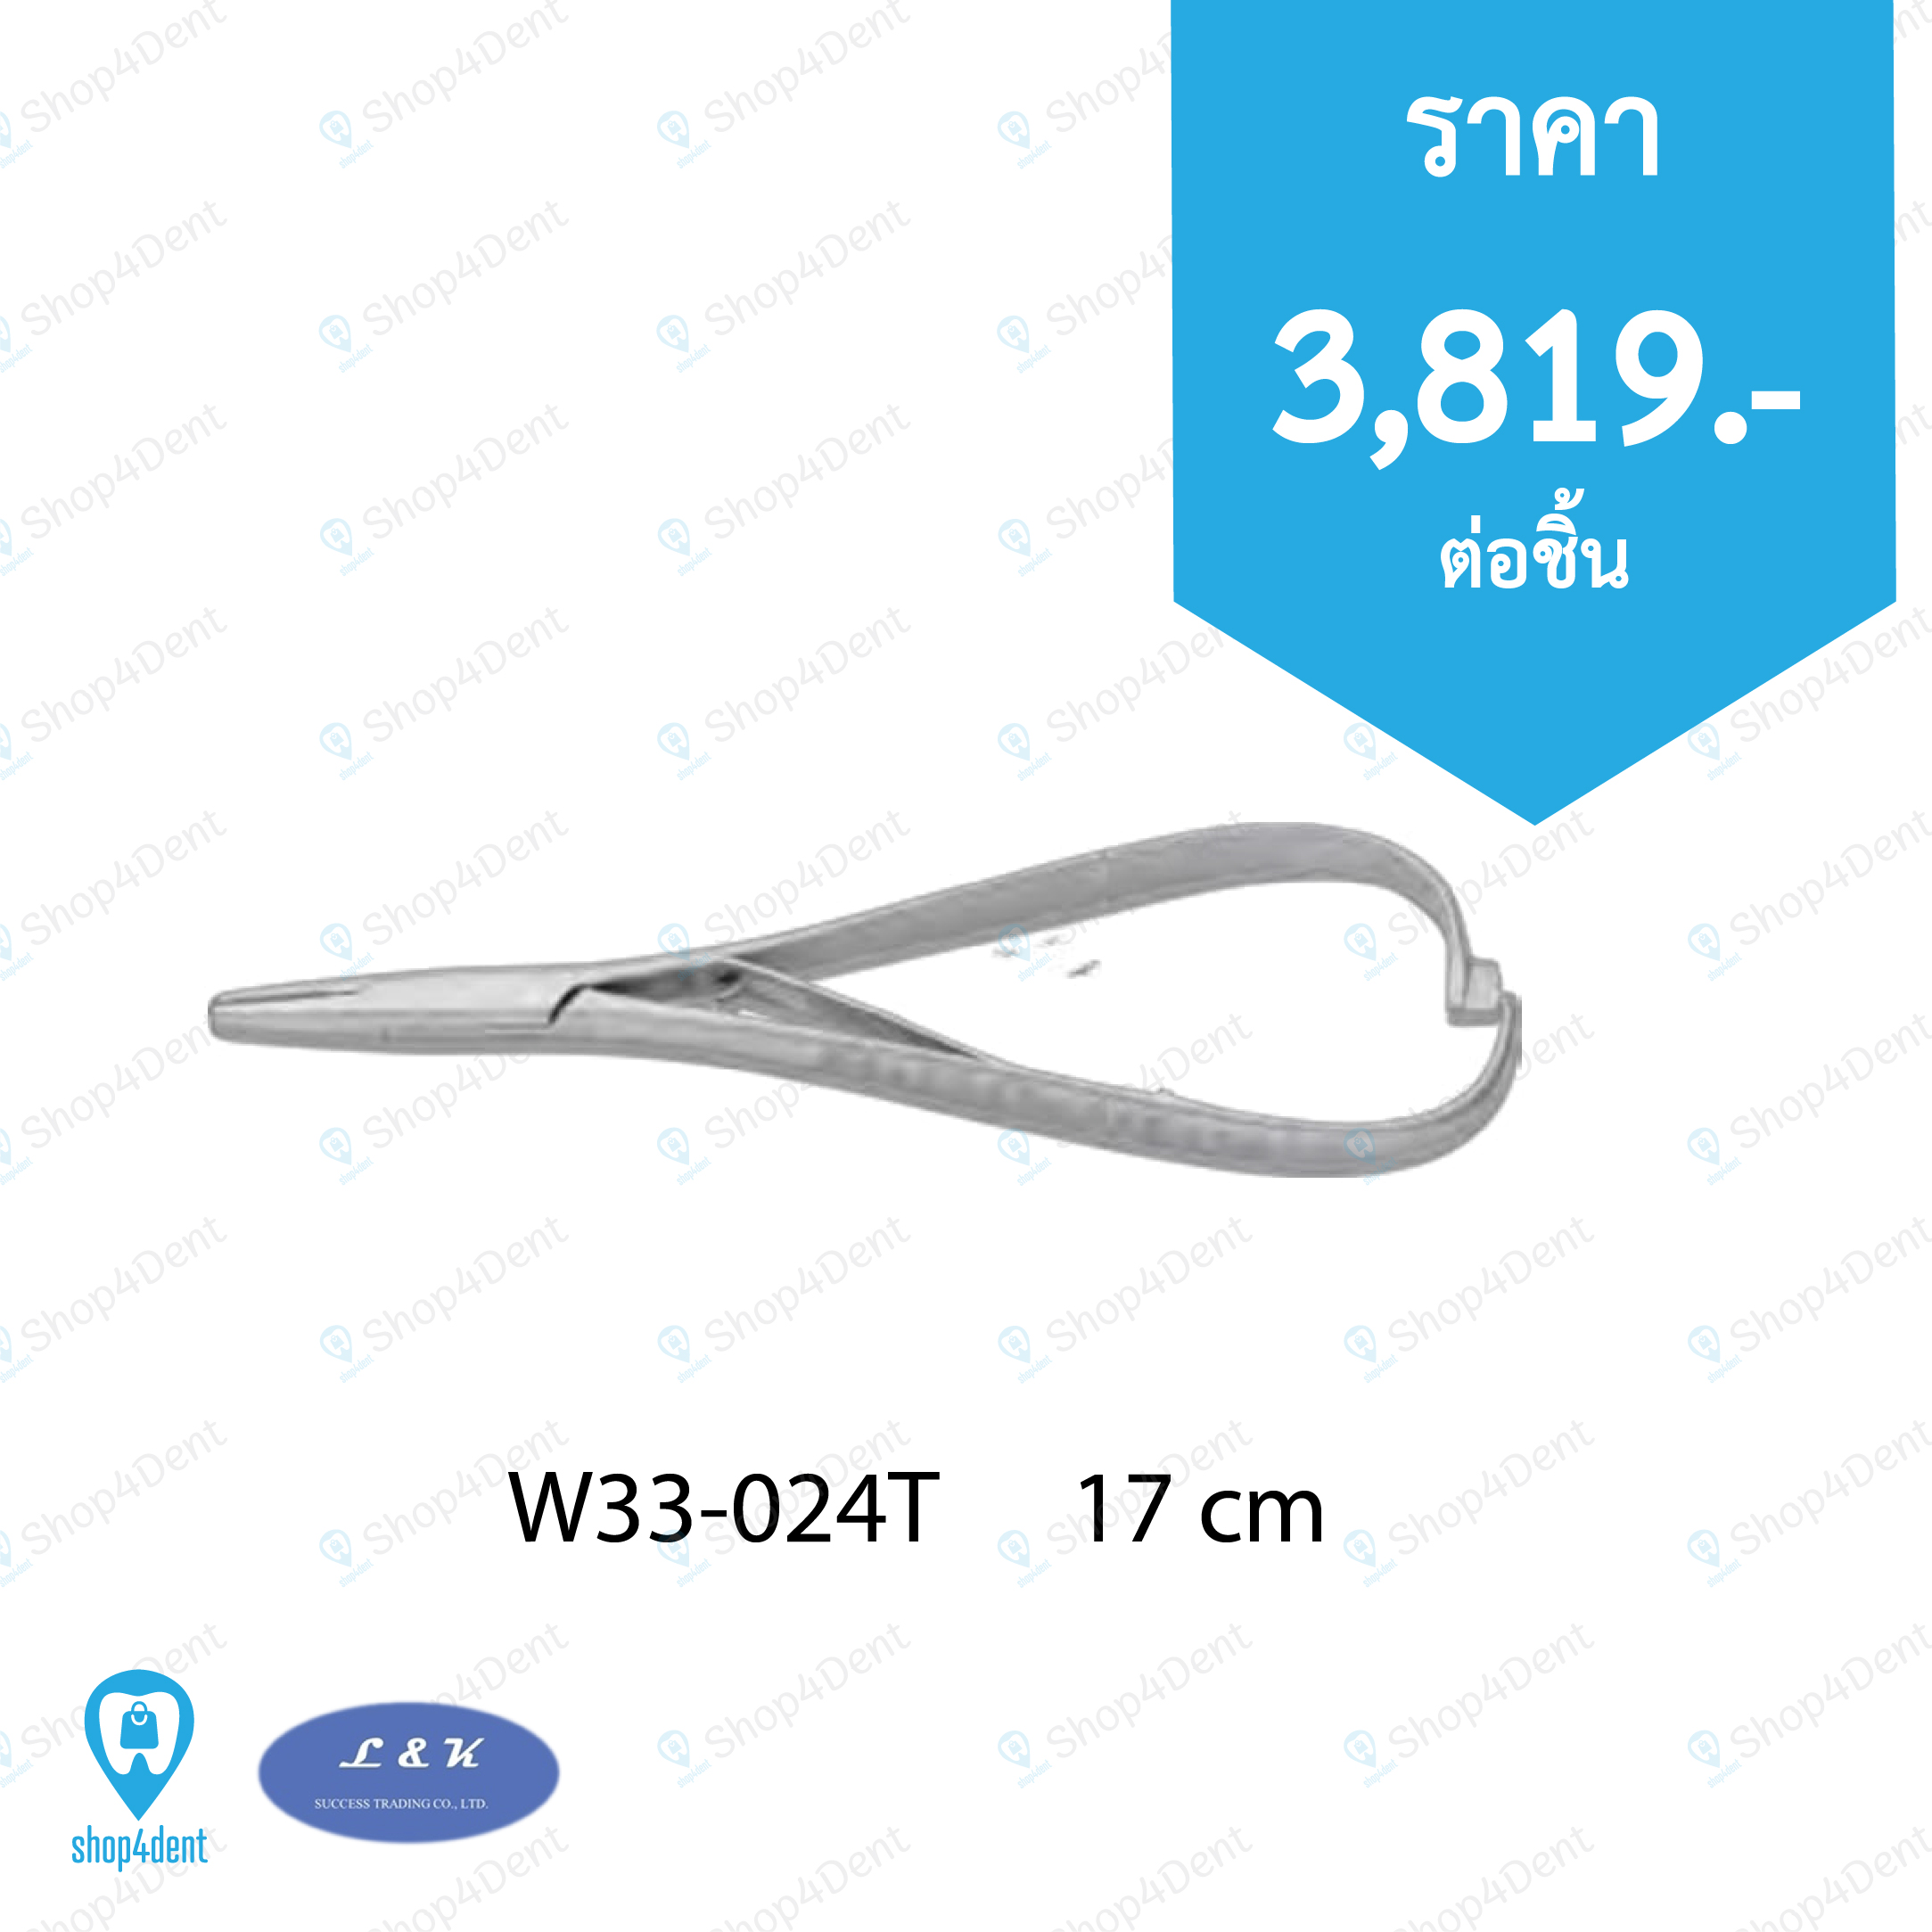 Needle Holders   W33-024T      17 cm